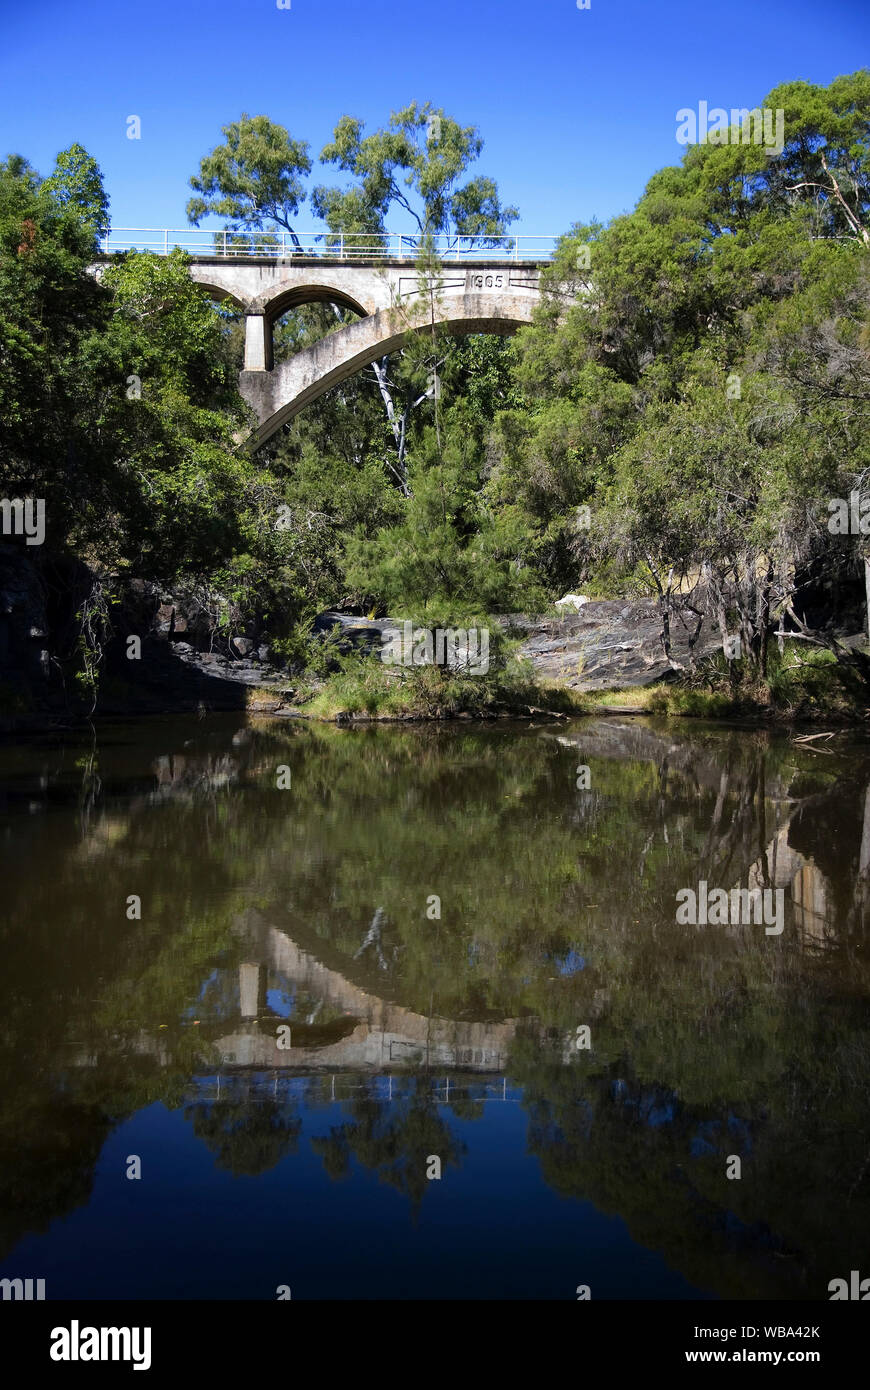 Chowey historique : pont en béton d'un span construction. Biggenden, Queensland, Australie Banque D'Images